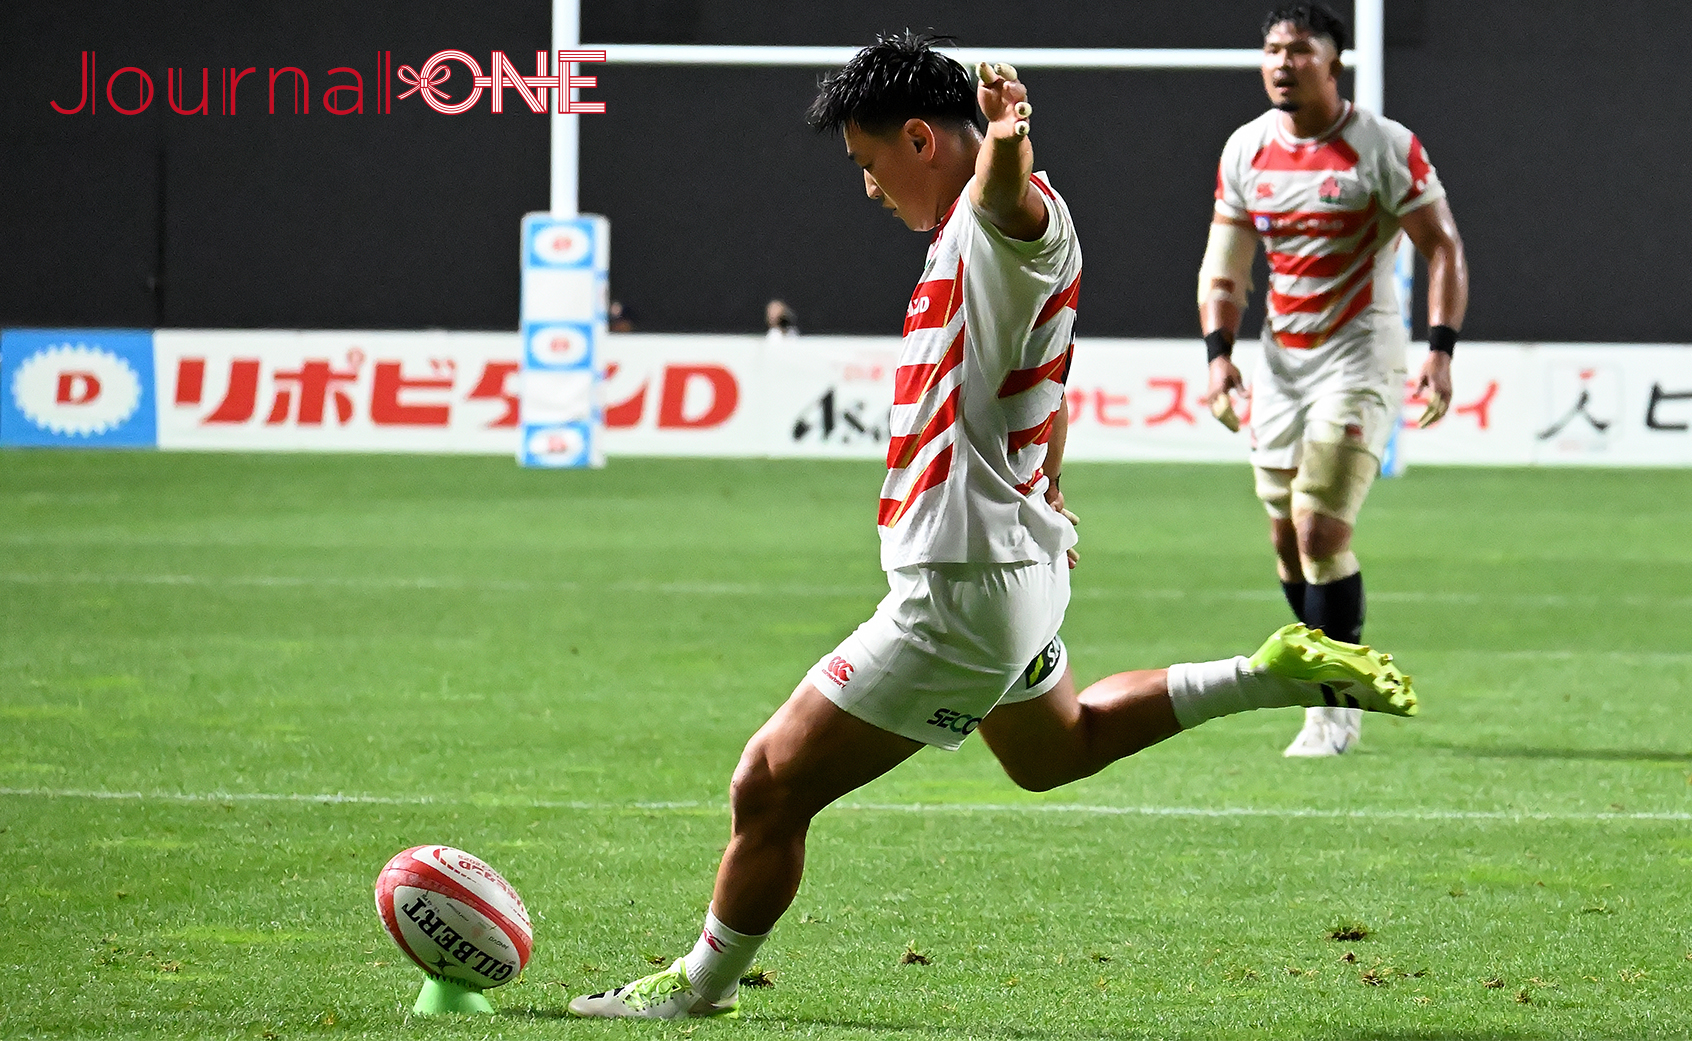 リポビタンD2023| JAPAN vs サモア| 6本のゴールを全て成功させた日本代表#10李 承信選手-Journal-ONE撮影